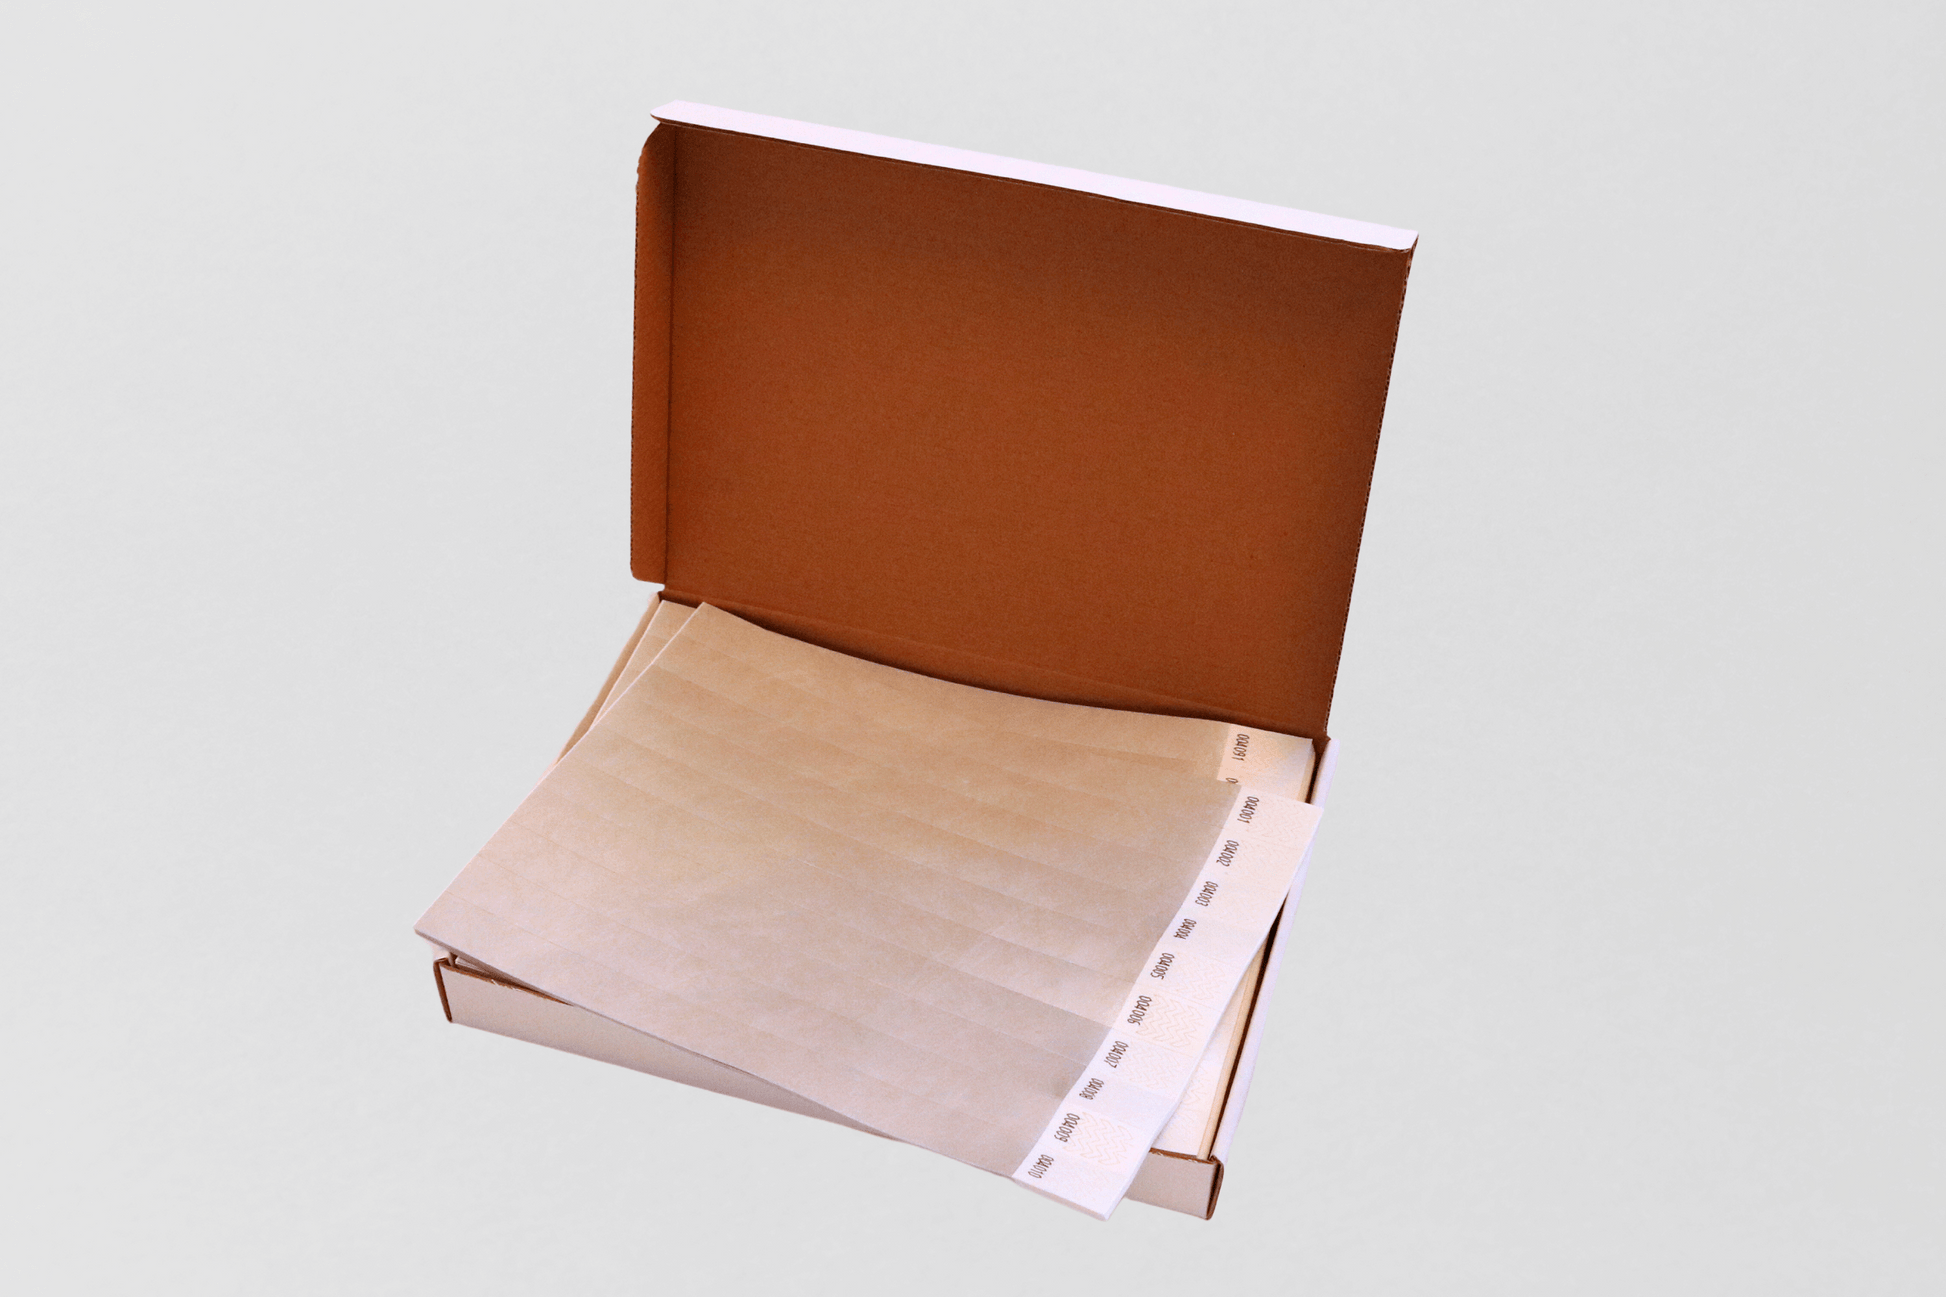 En brun boks med et ark og et JM Band NO festivalarmbånd i.